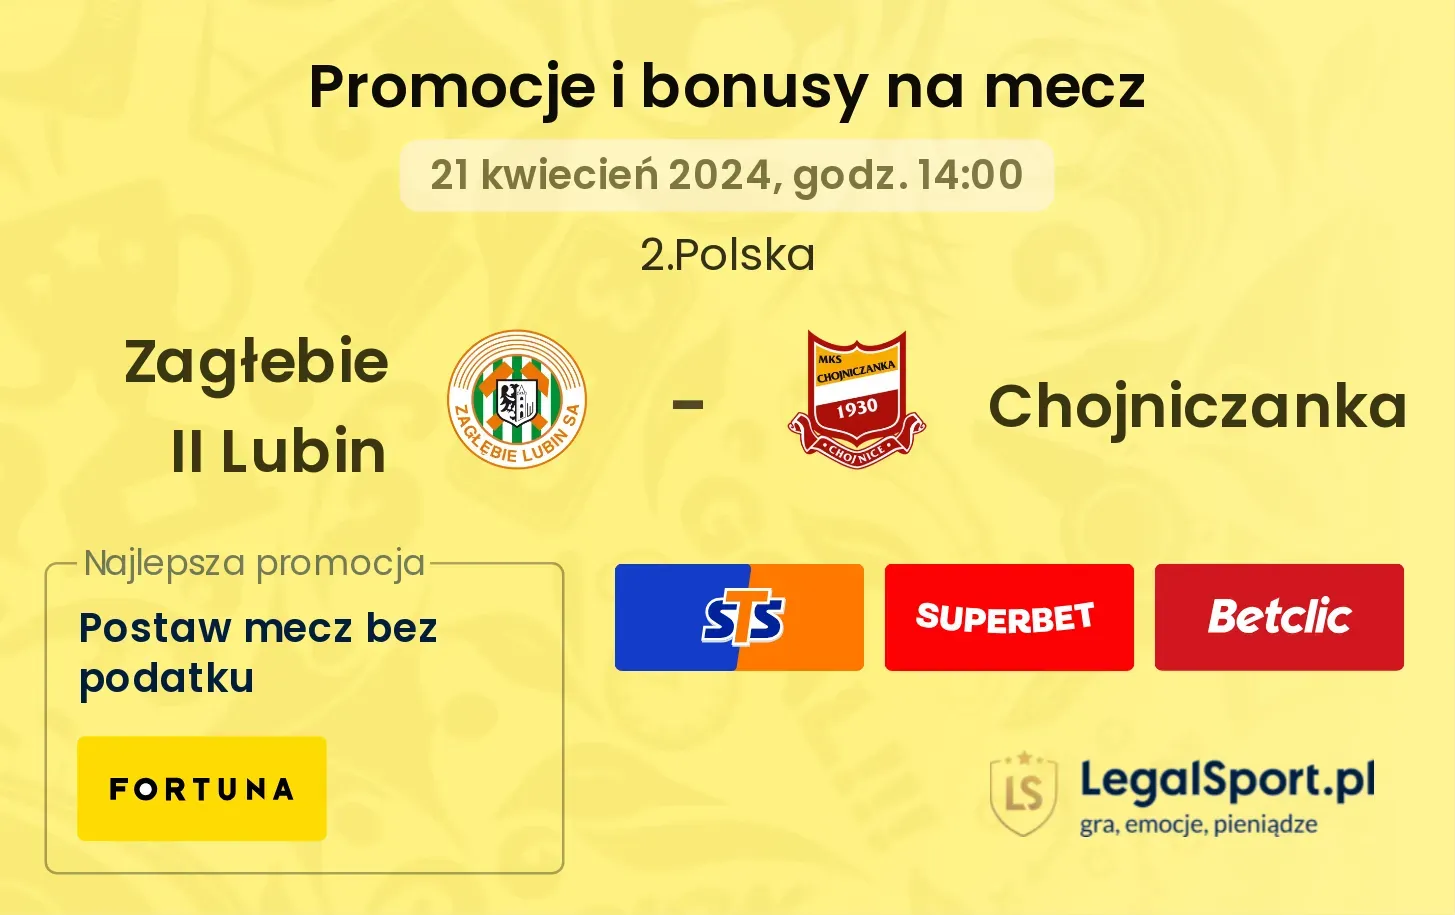 Zagłebie II Lubin - Chojniczanka promocje bonusy na mecz